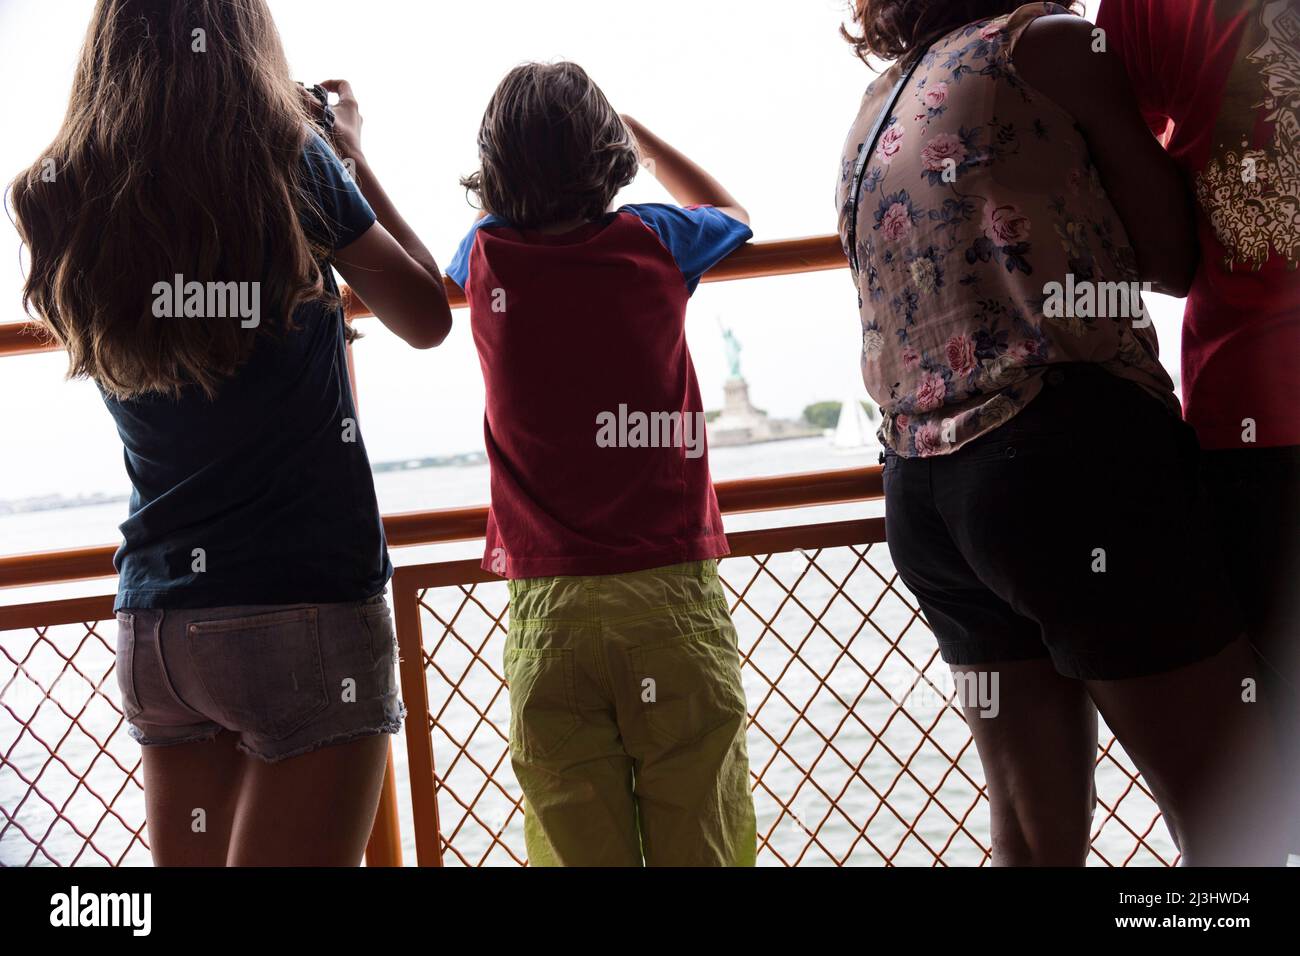 New York City, NY, USA, 14 Jahre altes kaukasisches Teenager-Mädchen und 12 Jahre altes kaukasisches Teenager-Mädchen – beide mit braunen Haaren und sommerlichem Styling auf der staten Island Ferry. Freiheitsstatue dahinter Stockfoto